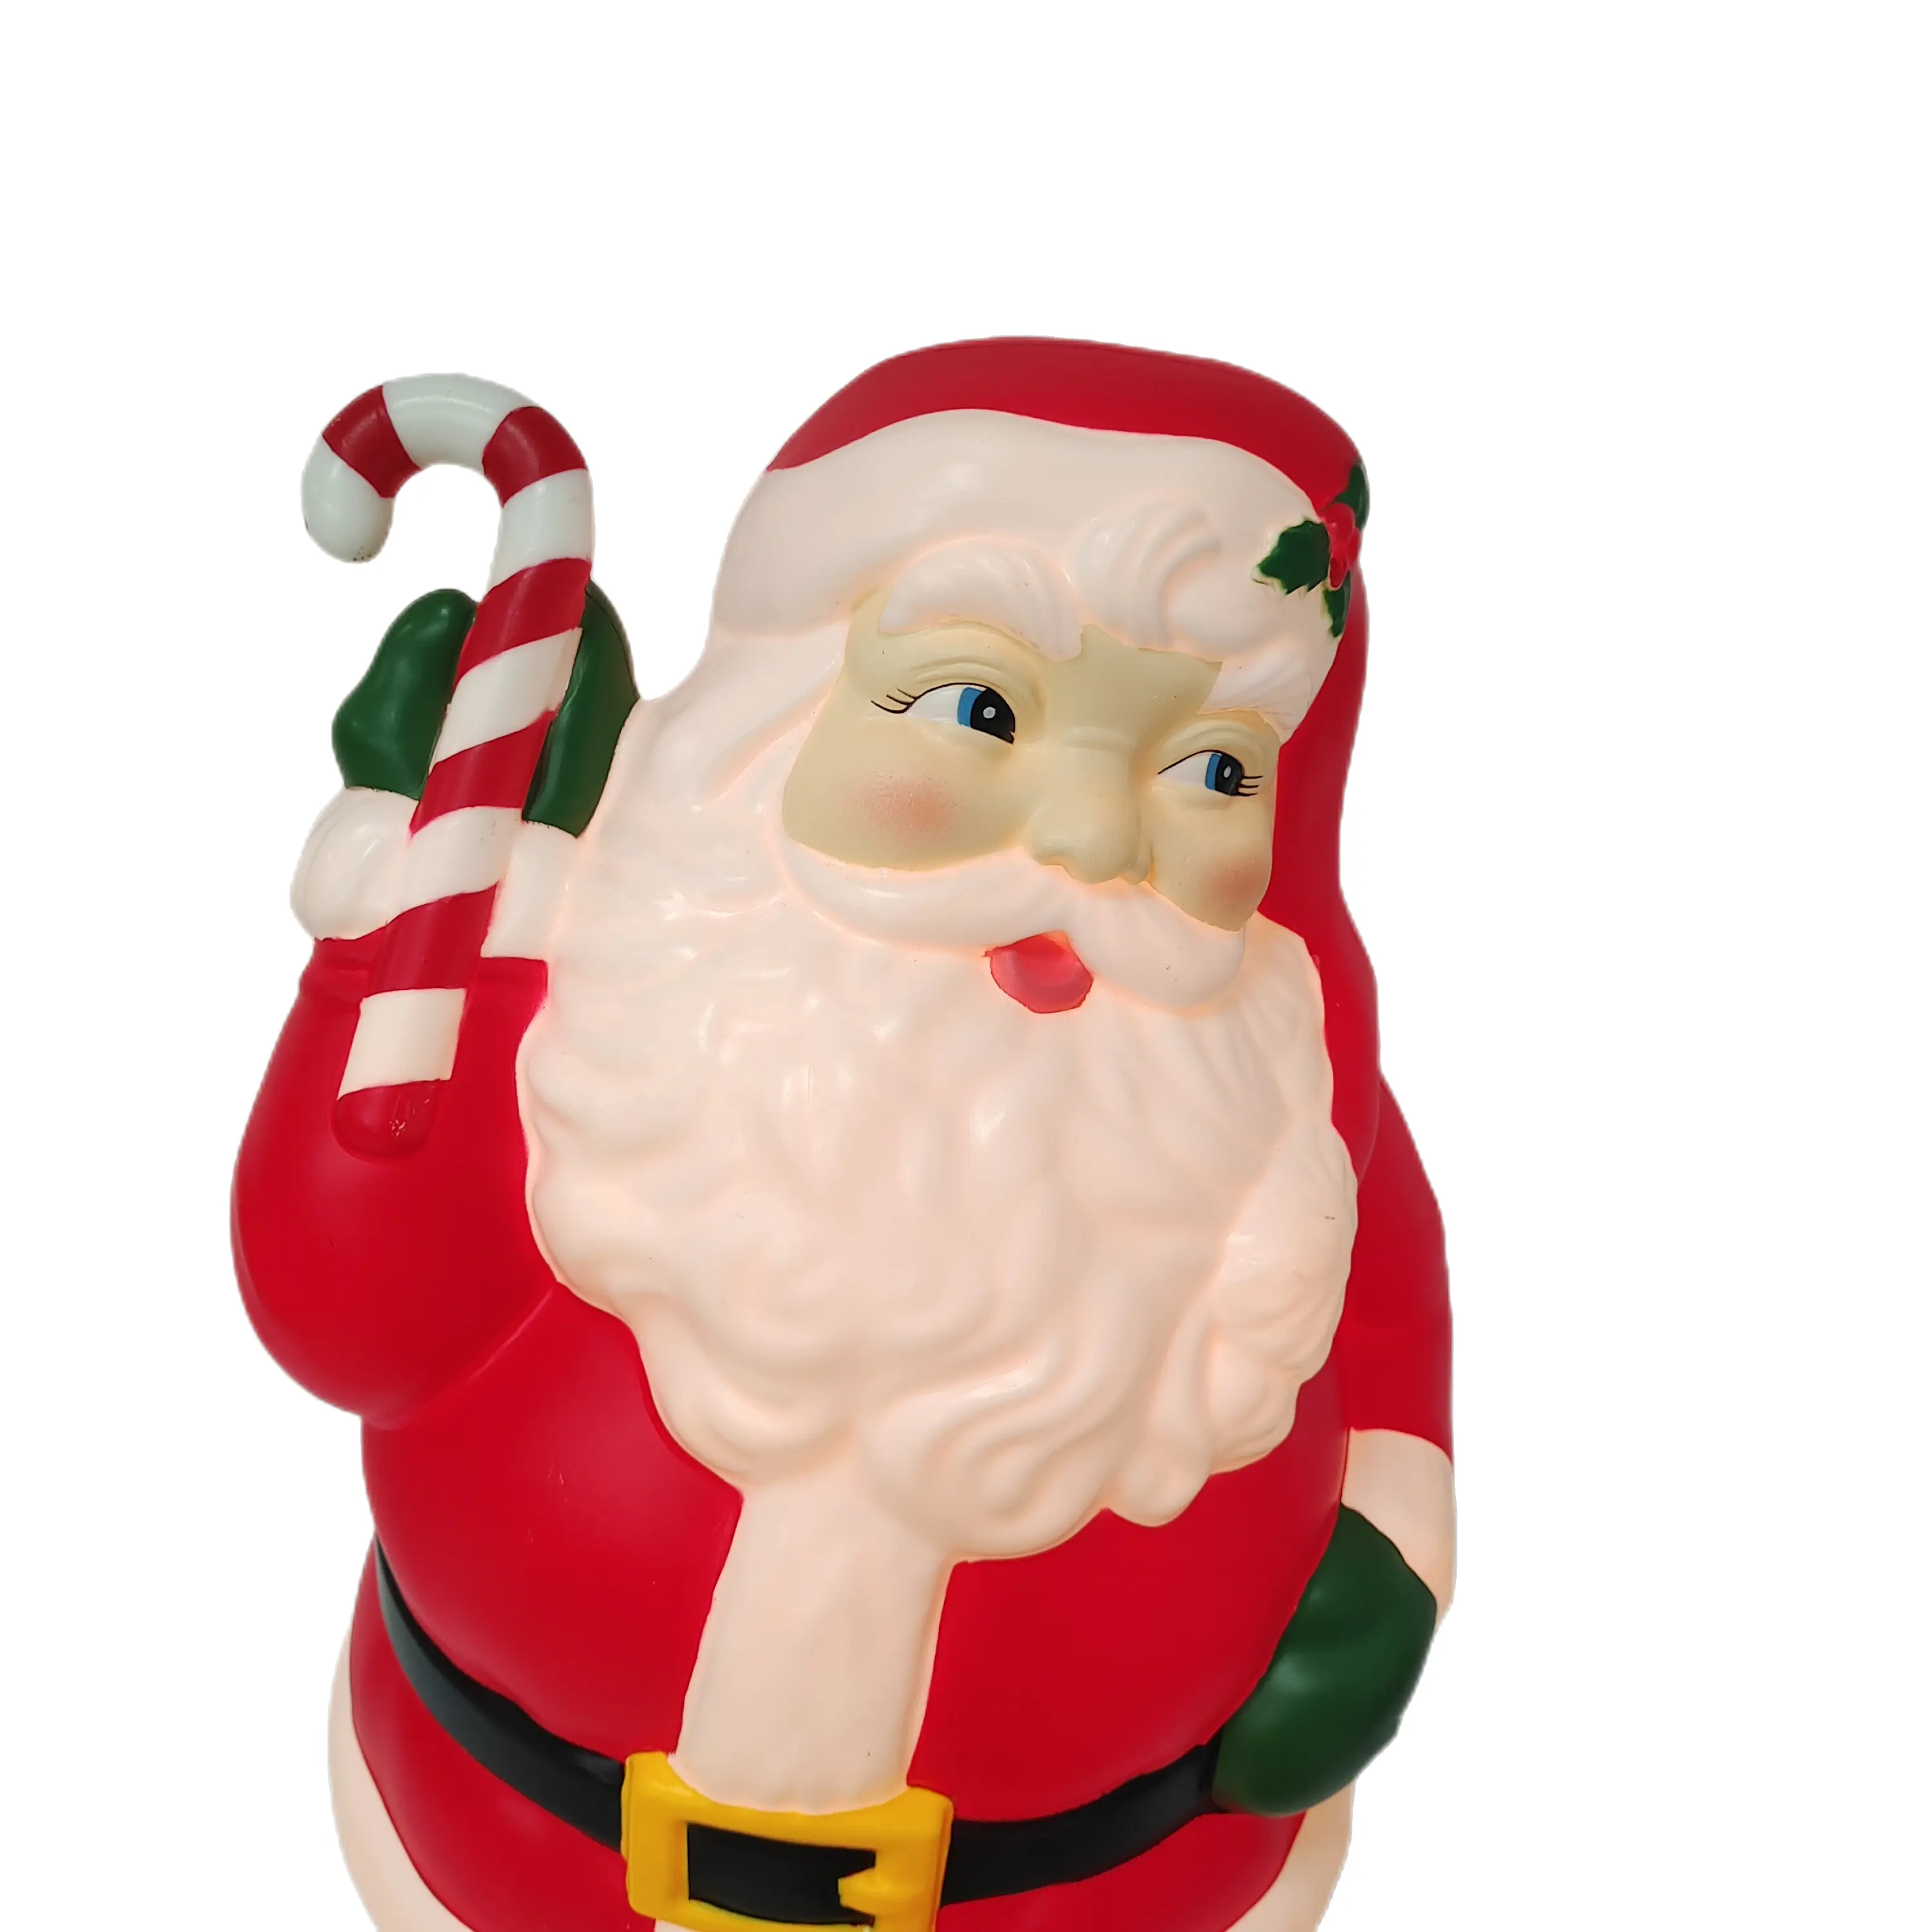 ノームクリスマスデコレーションサンタクロースプラスチックブローモールディングクリスマスクリエイティブギフト高級装飾品ホリデーカスタムギフト